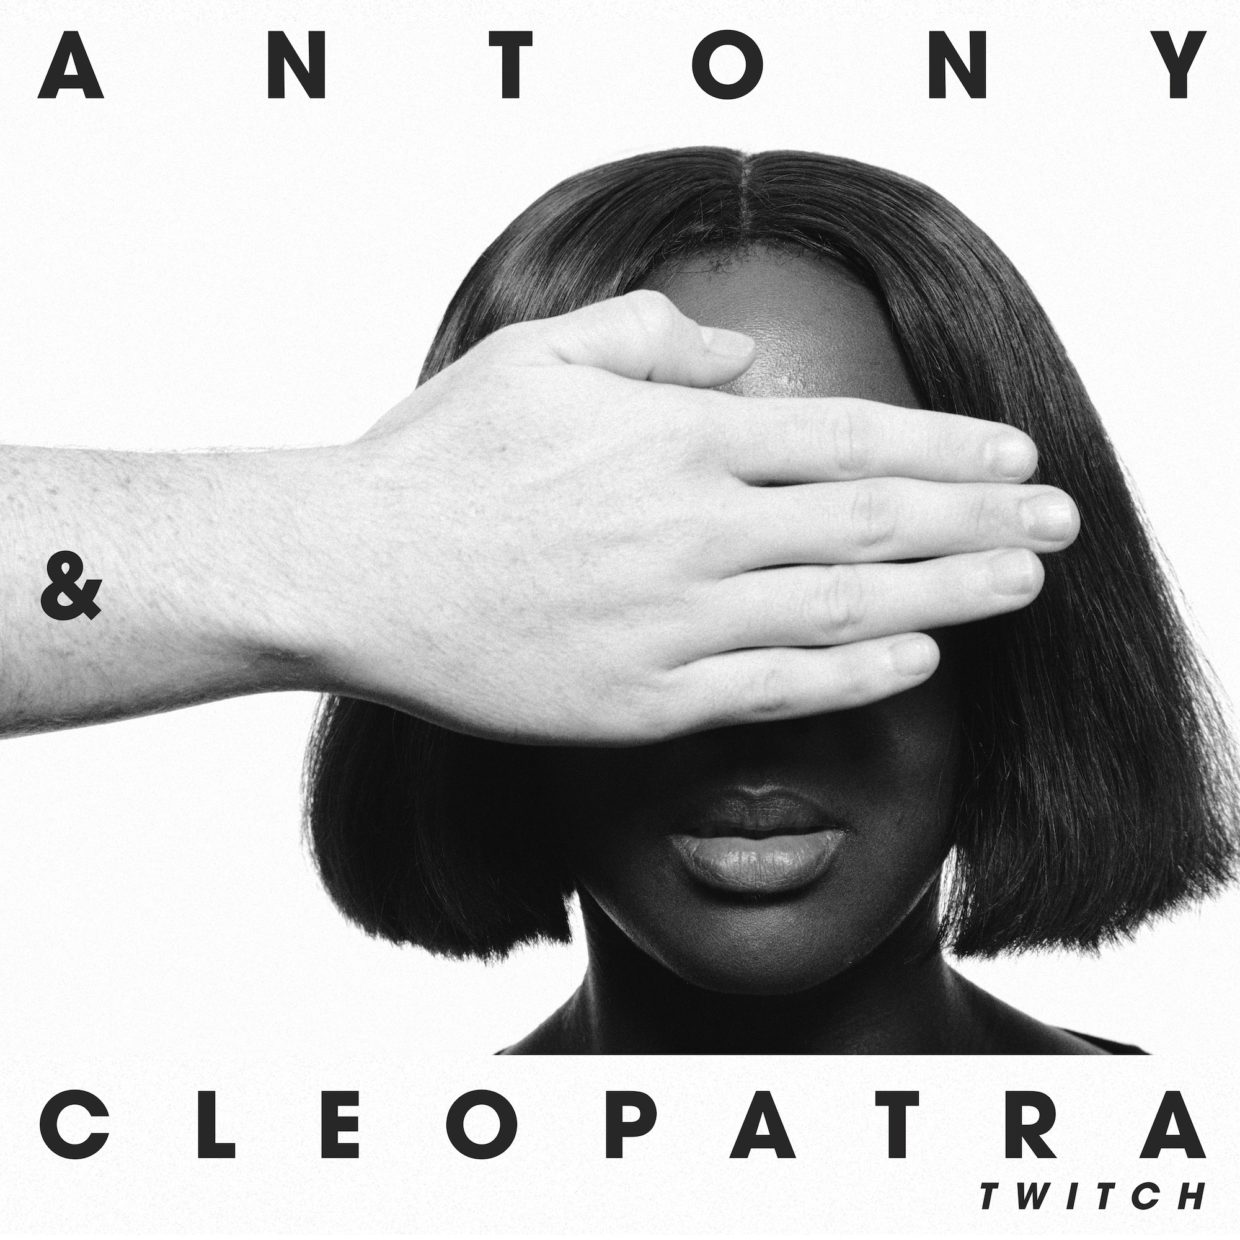 Antony & Cleopatra - Twitch